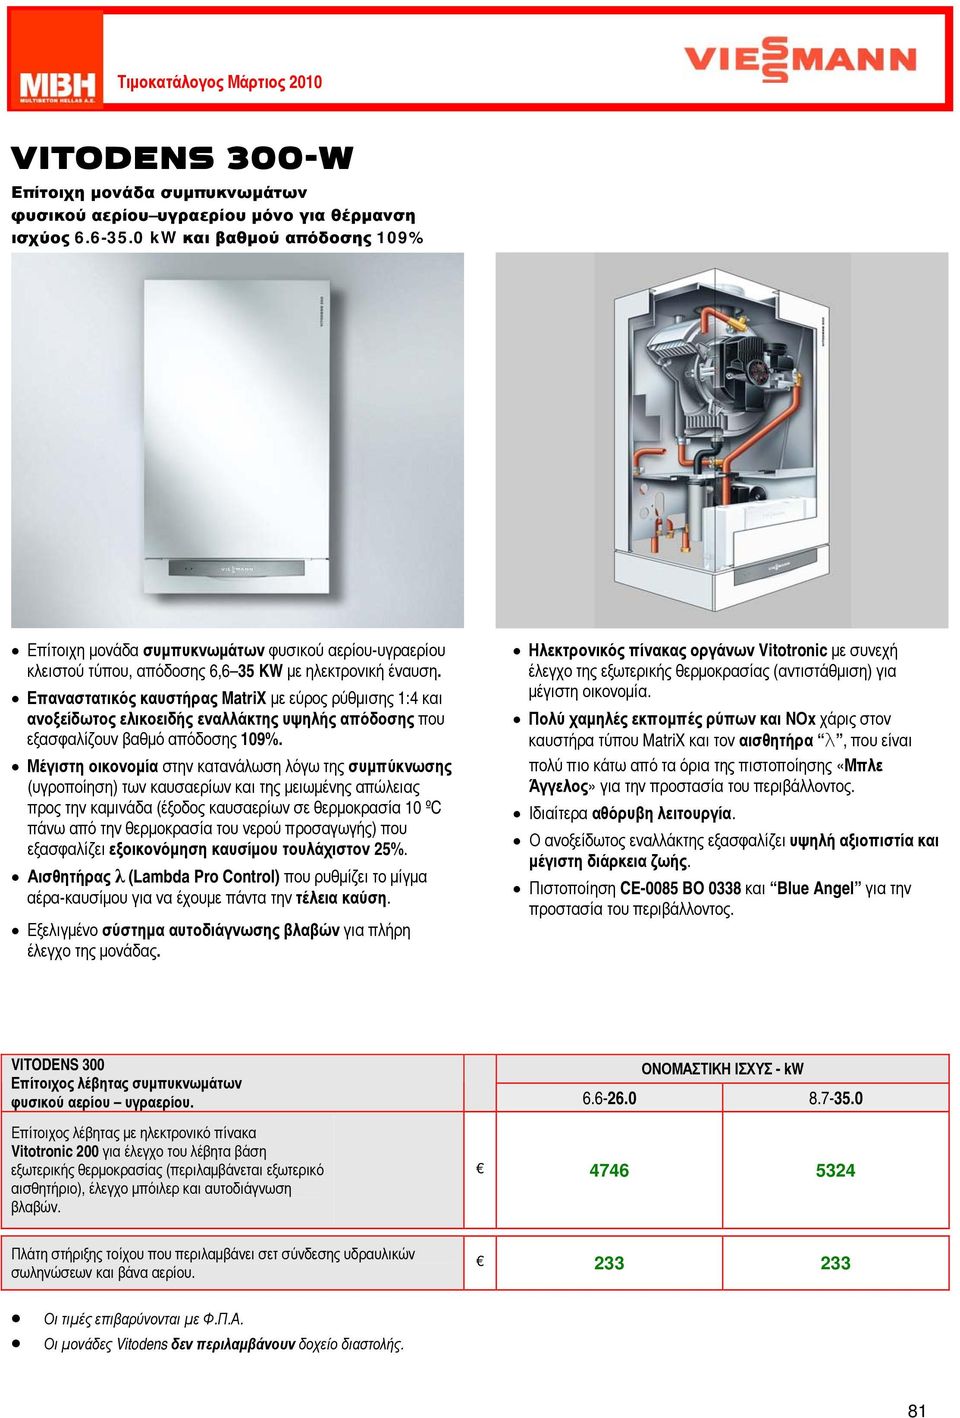 Επαναστατικός καυστήρας MatriX με εύρος ρύθμισης 1:4 και ανοξείδωτος ελικοειδής εναλλάκτης υψηλής απόδοσης που εξασφαλίζουν βαθμό απόδοσης 109%.